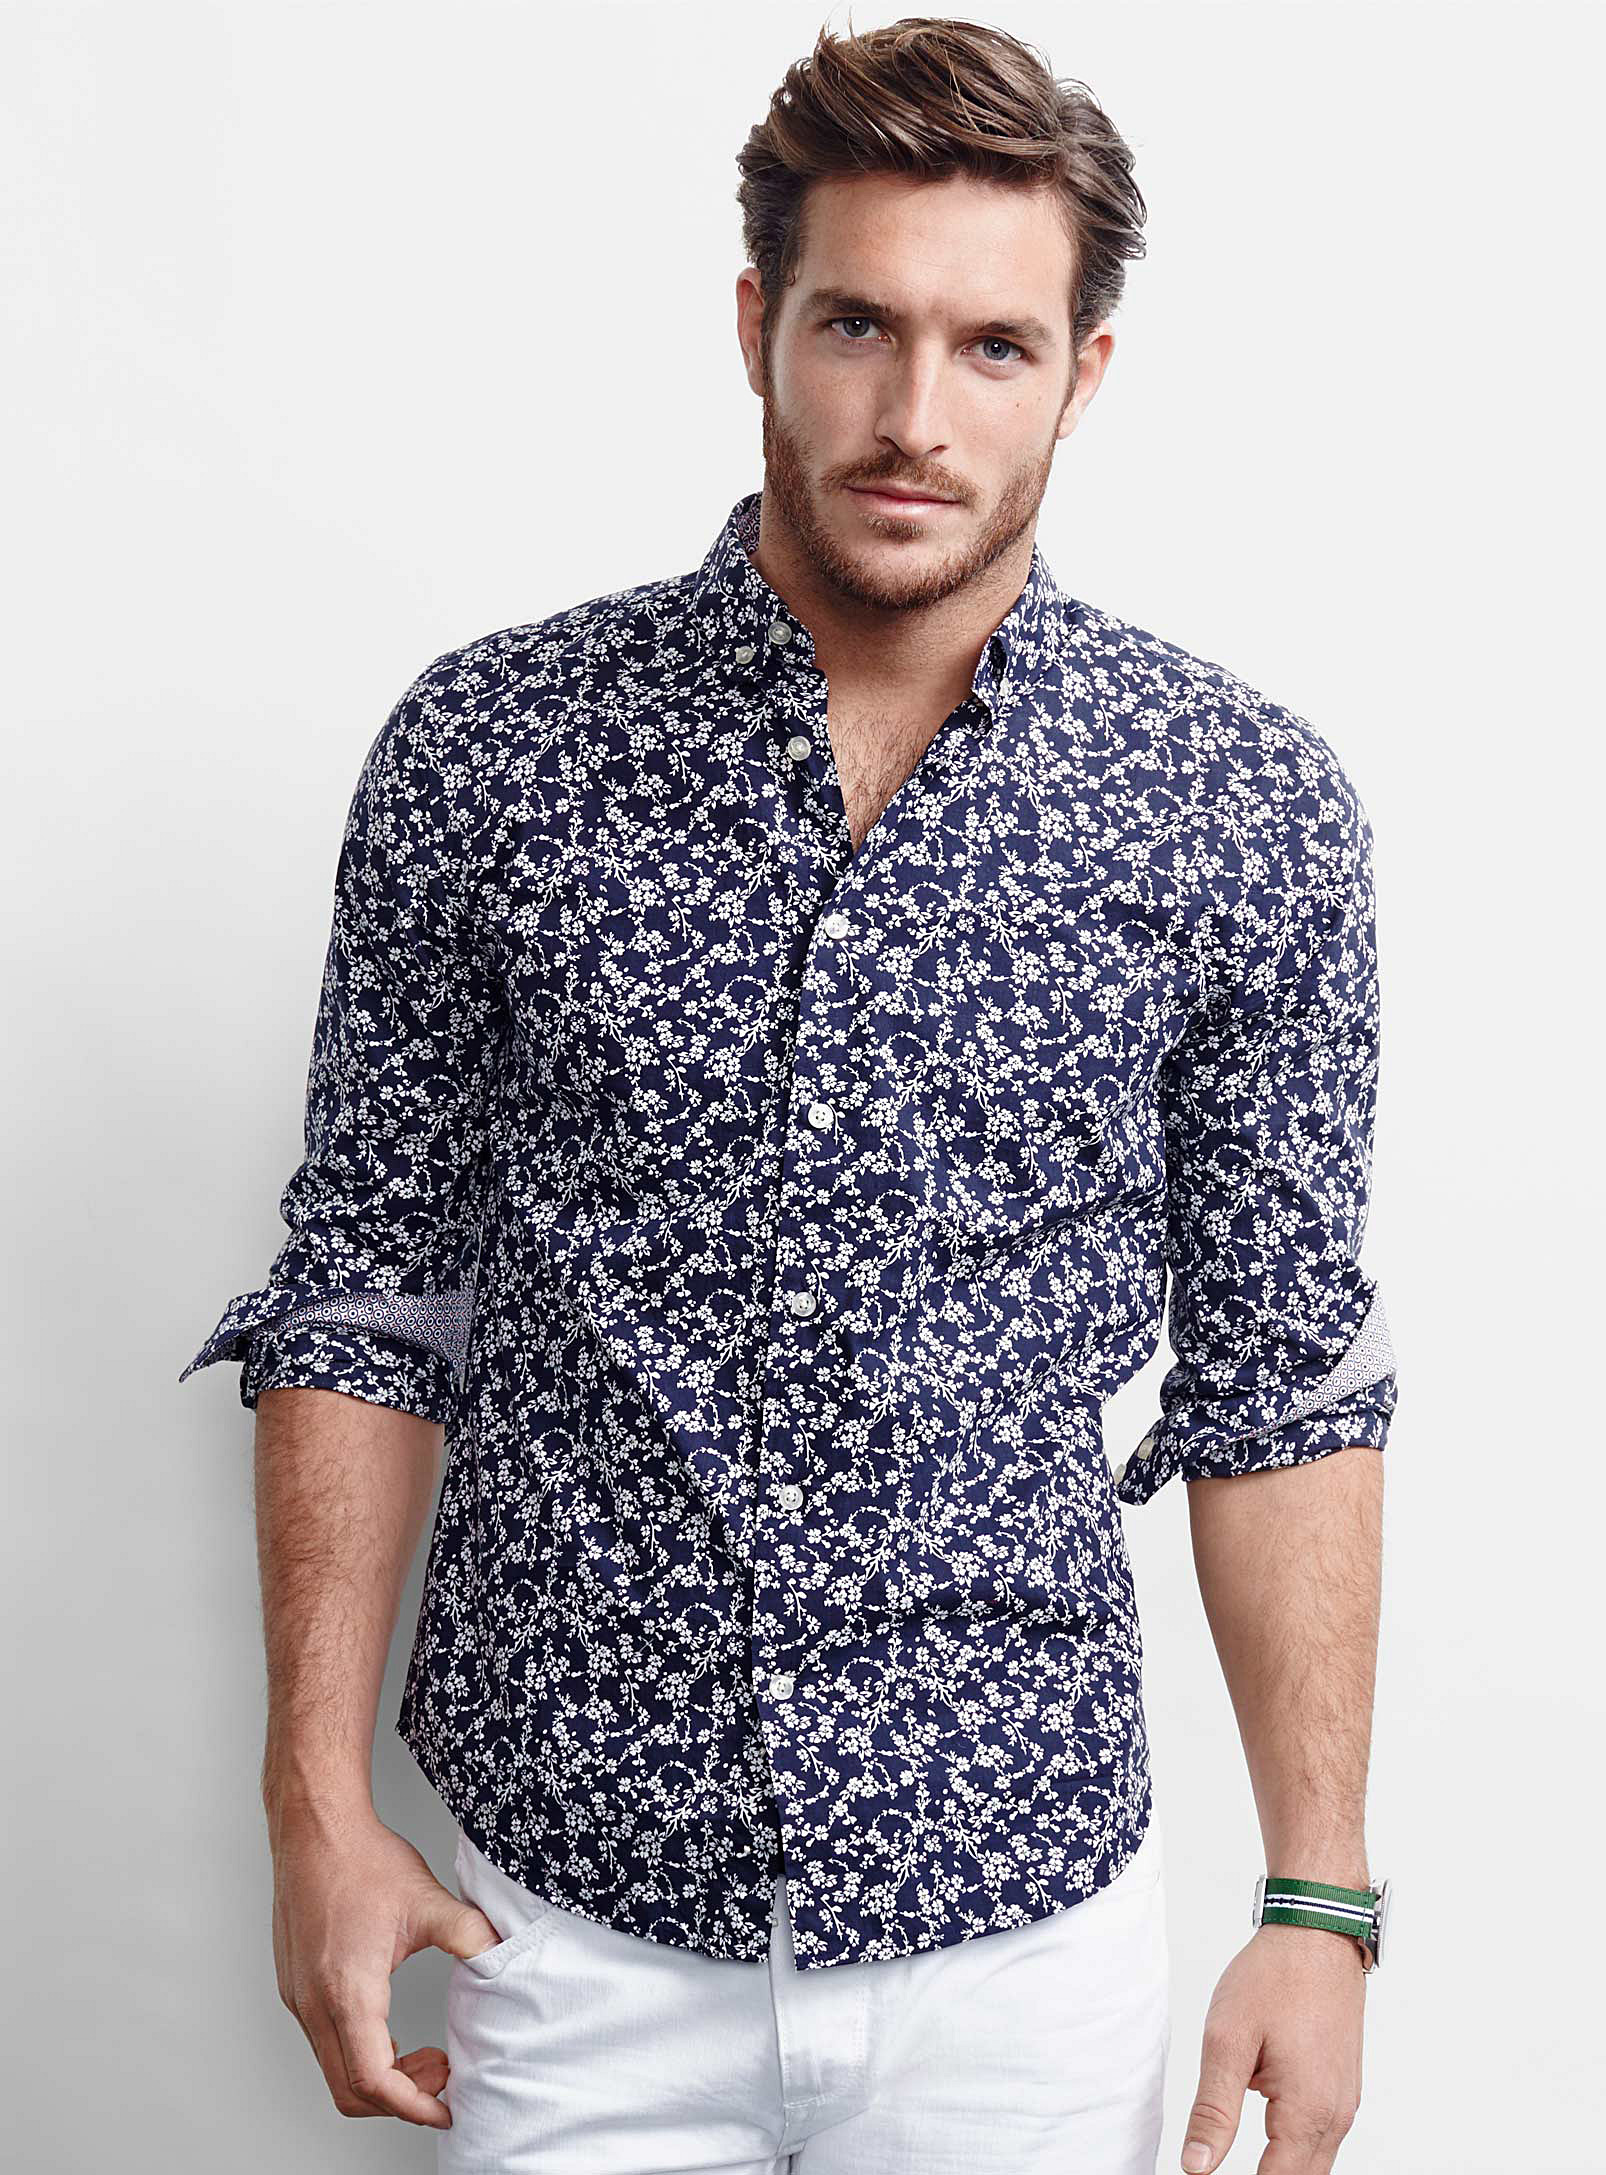 Рубашек мужских сайт. Рубашка мужская. Летняя рубашка. Современная рубашка. Модные рубашки для мужчин.